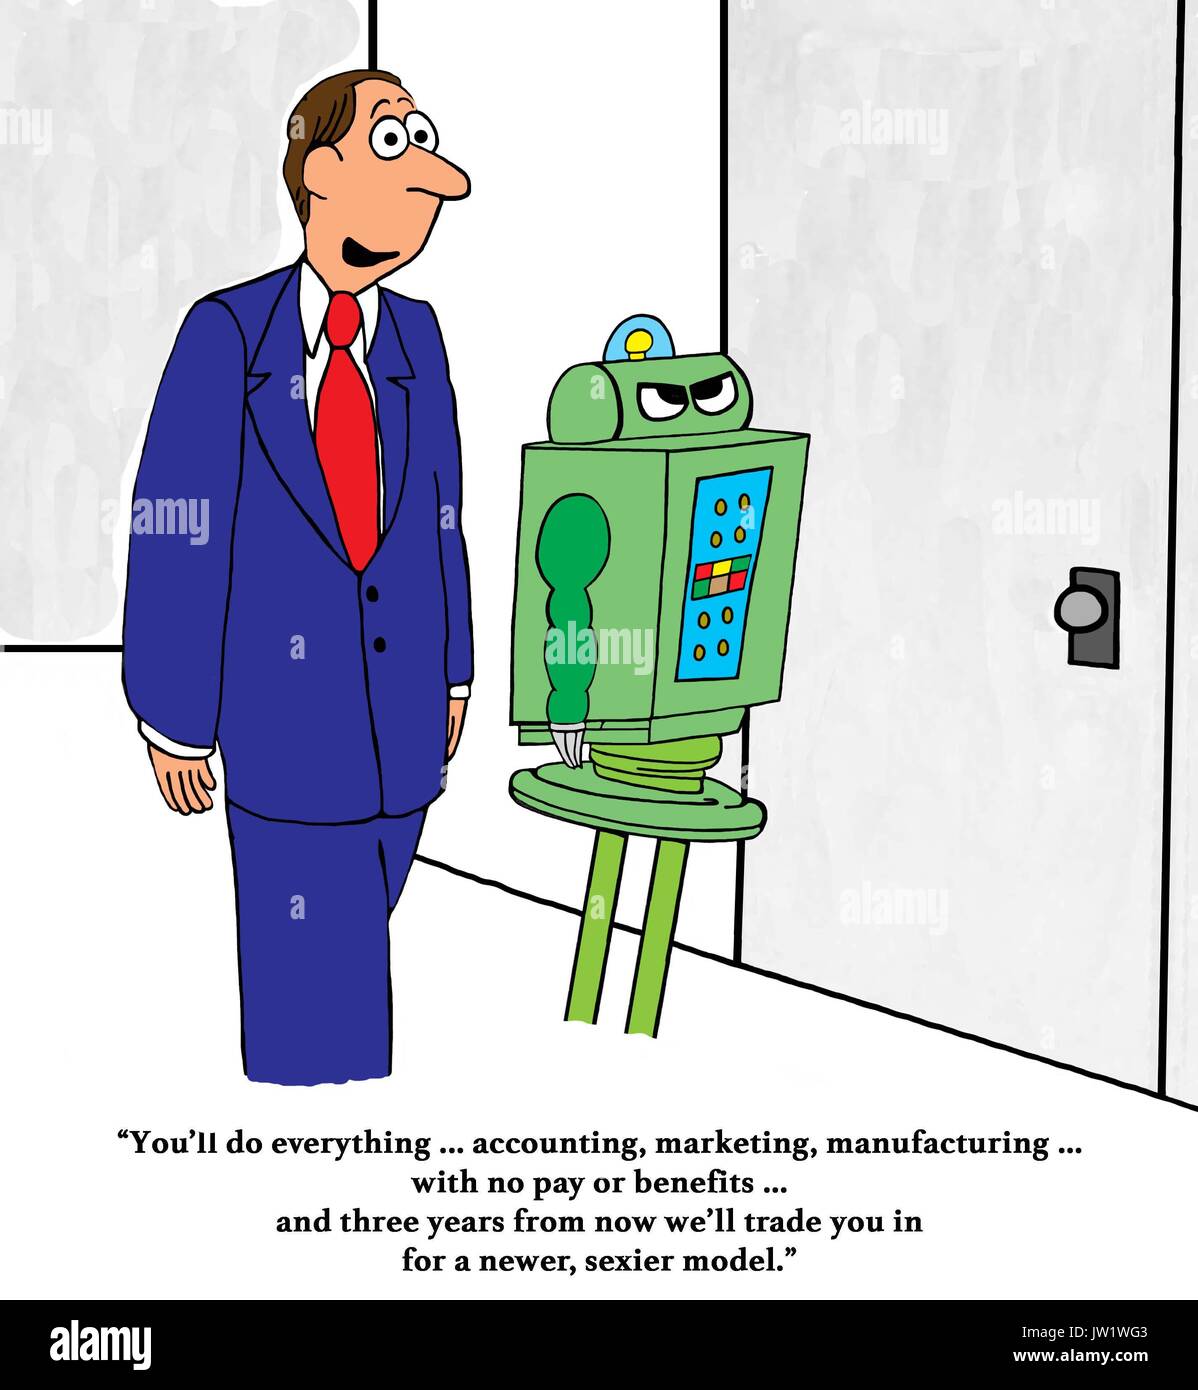 Business cartoon circa un robot che saranno negoziati in per un modello più recente in tre anni. Foto Stock